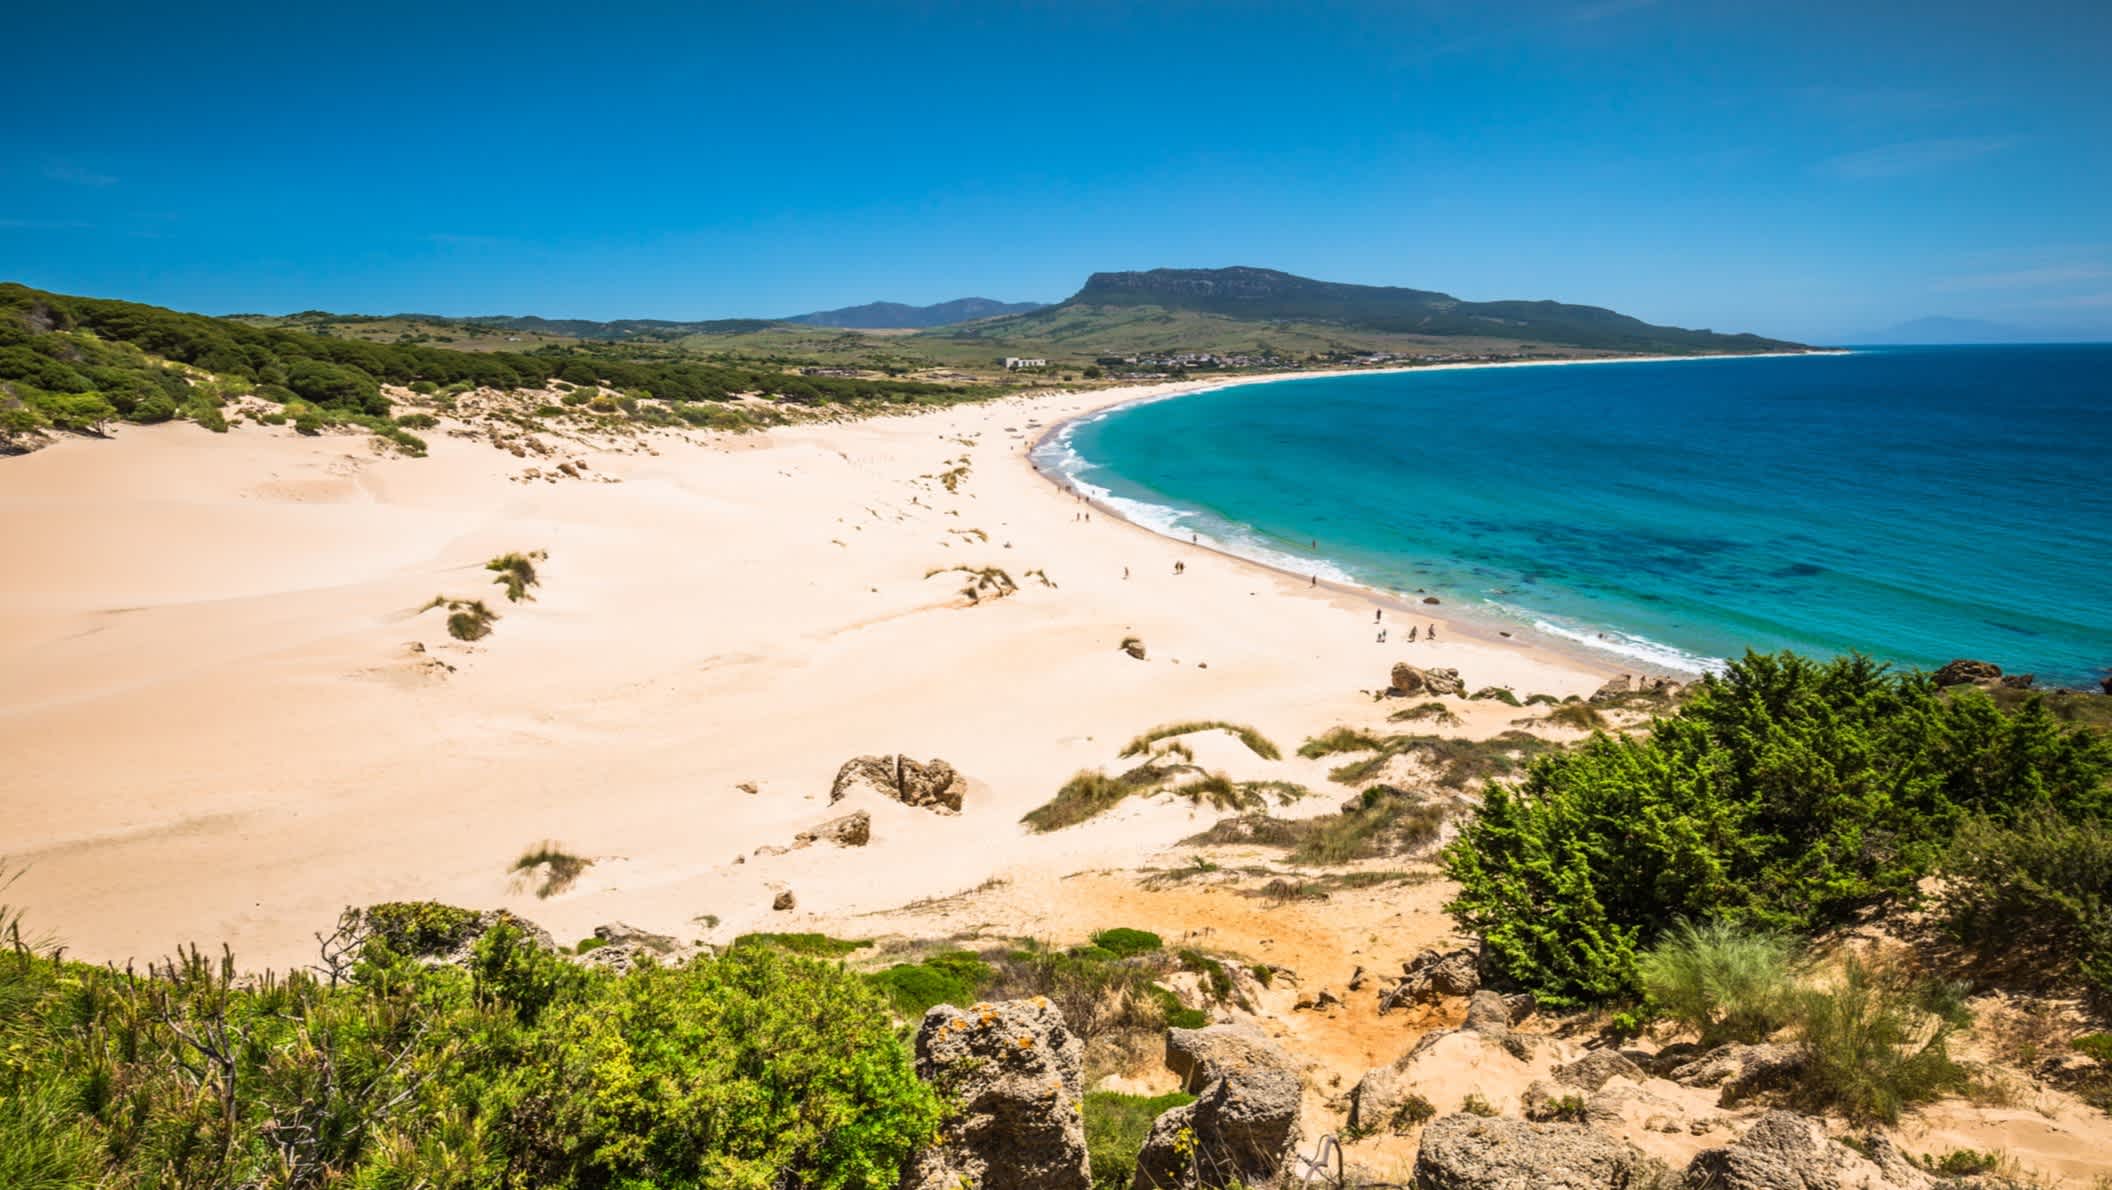 Sanddüne von Bolonia Strand, Provinz Cadiz, Andalusien, Spanien.

